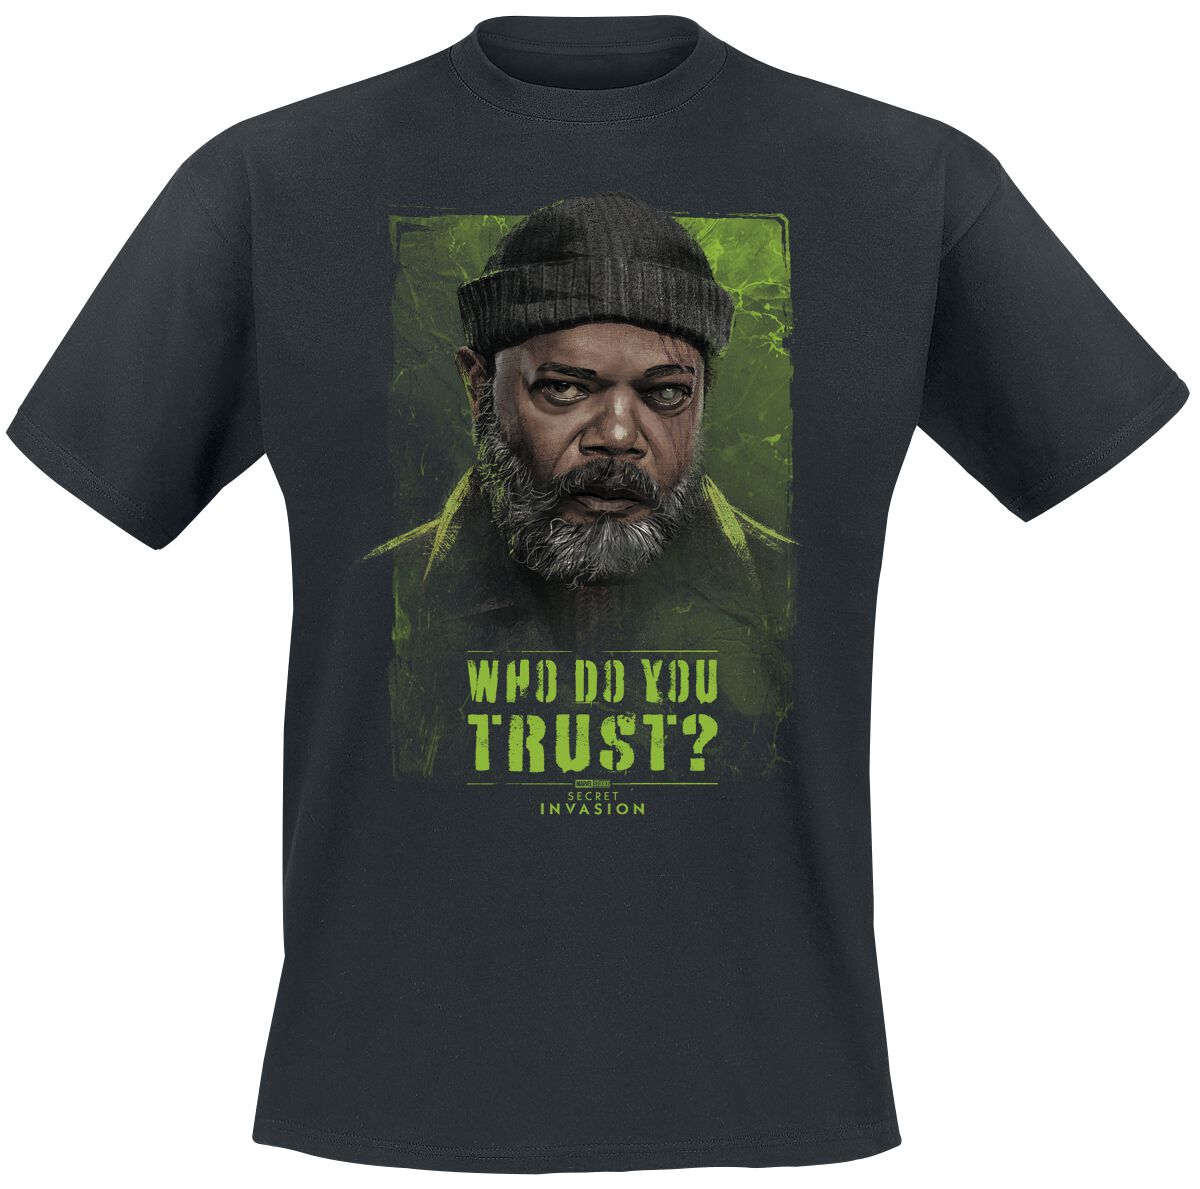 Secret Invasion - Marvel T-Shirt - Who Do You Trust? Nick Fury - S bis XXL - für Männer - Größe L - schwarz  - EMP exklusives Merchandise!